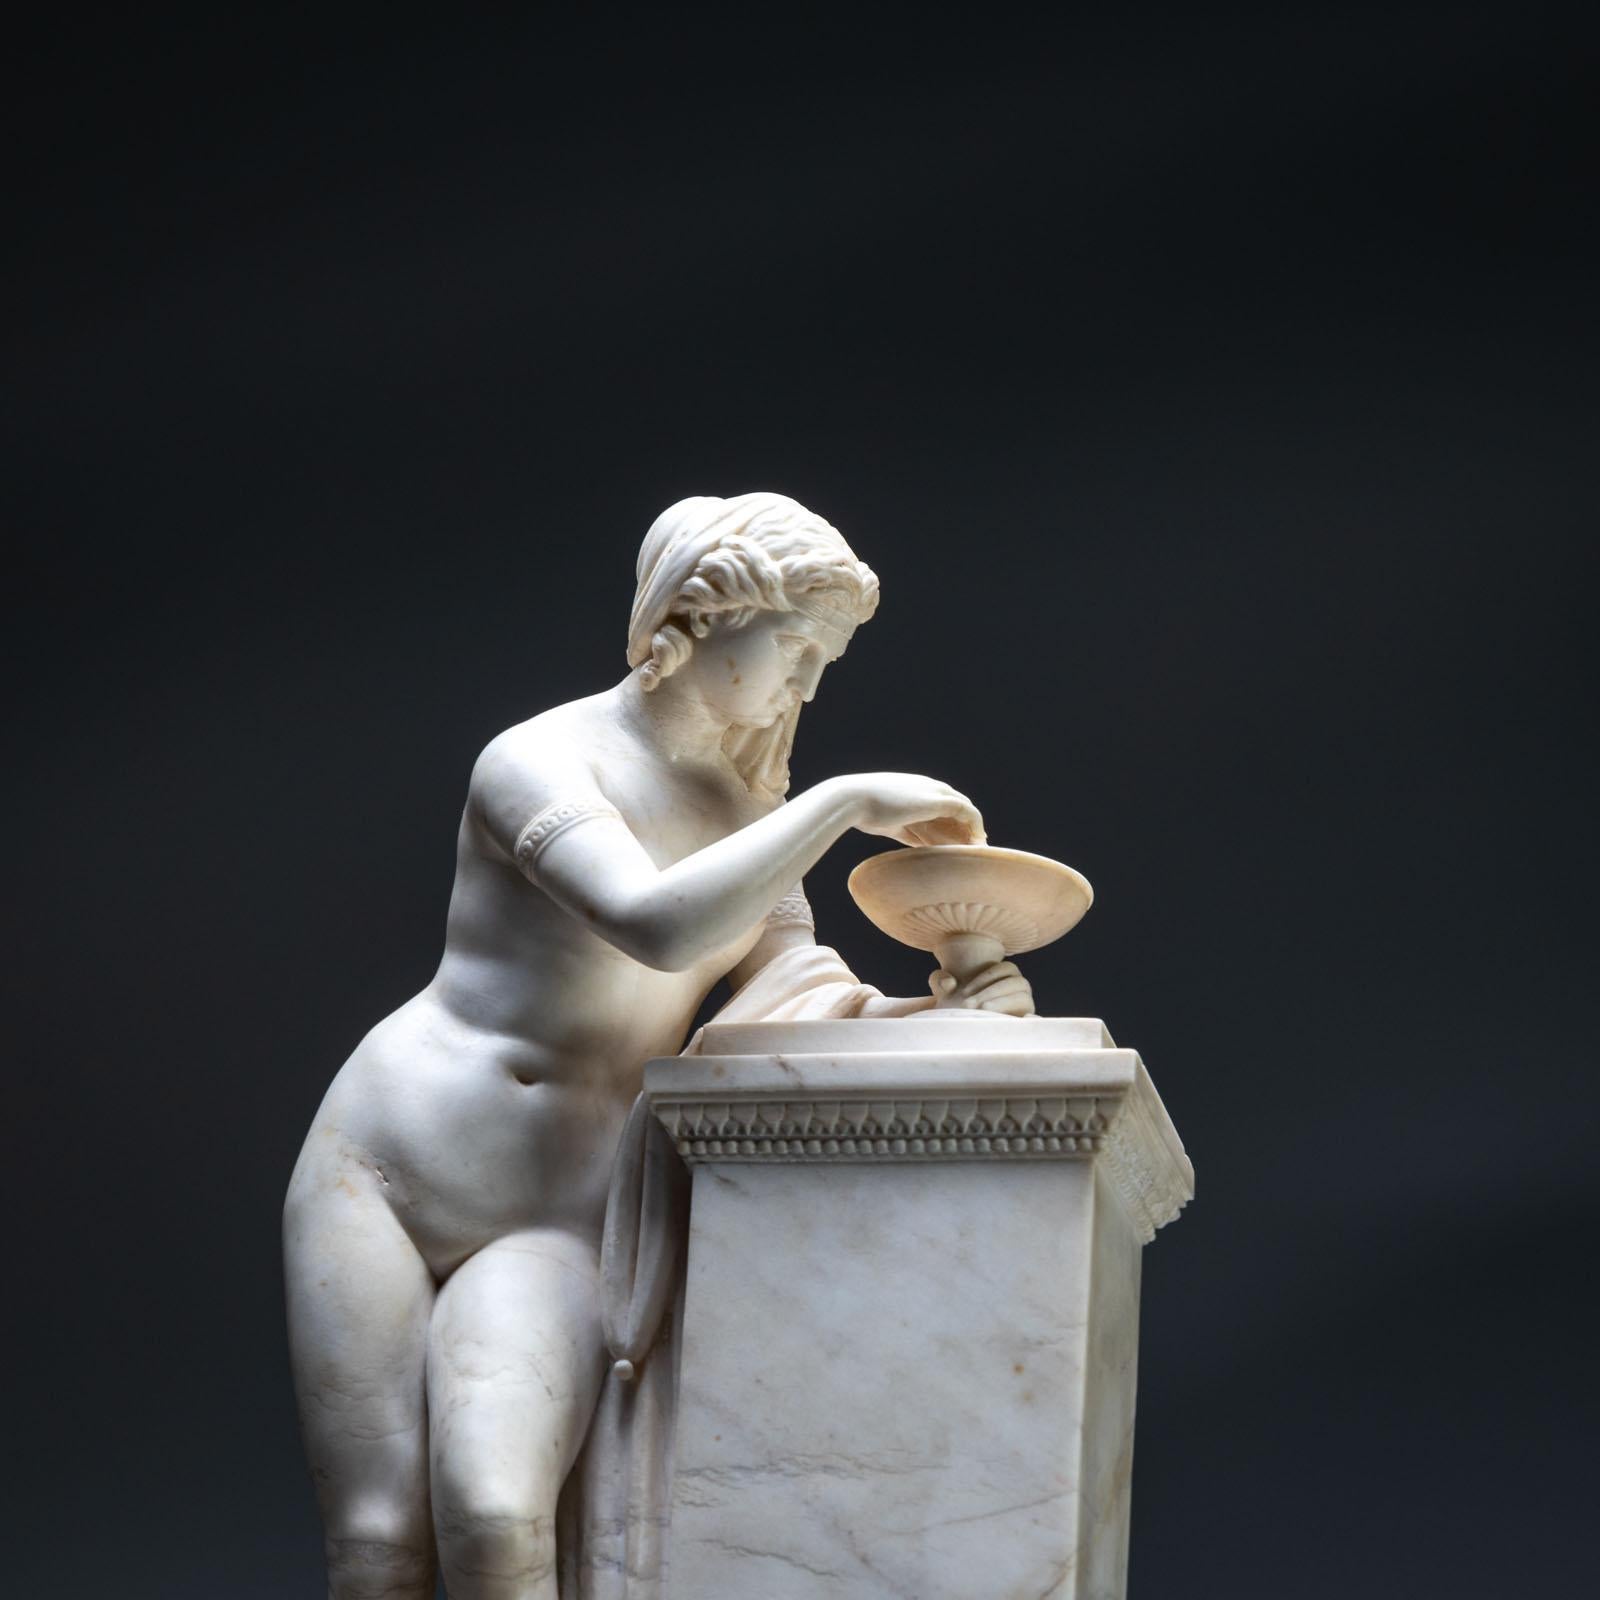 Sculpture en marbre, représentant probablement une nymphe dévêtue aux cheveux bouclés et portant des bracelets autour des bras. Elle est adossée à un pilier et remue la surface de l'eau dans la tazza avec un bâton. L'effet des ondulations à la